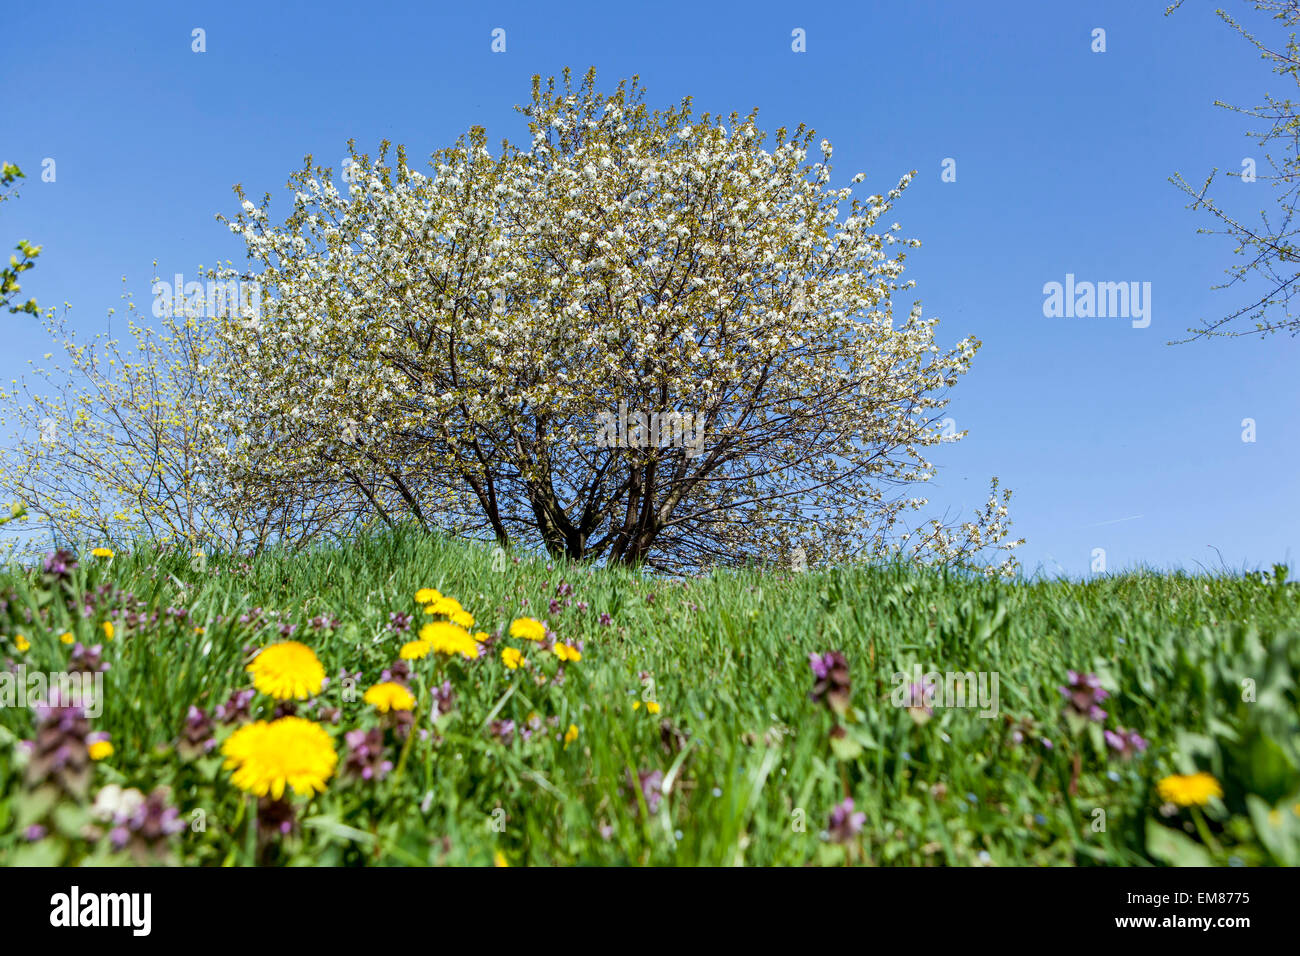 Blühende Kirsche Baum Gras Blumen Himmel Frühling Wiese Rasen Dandelion Blume Stockfoto